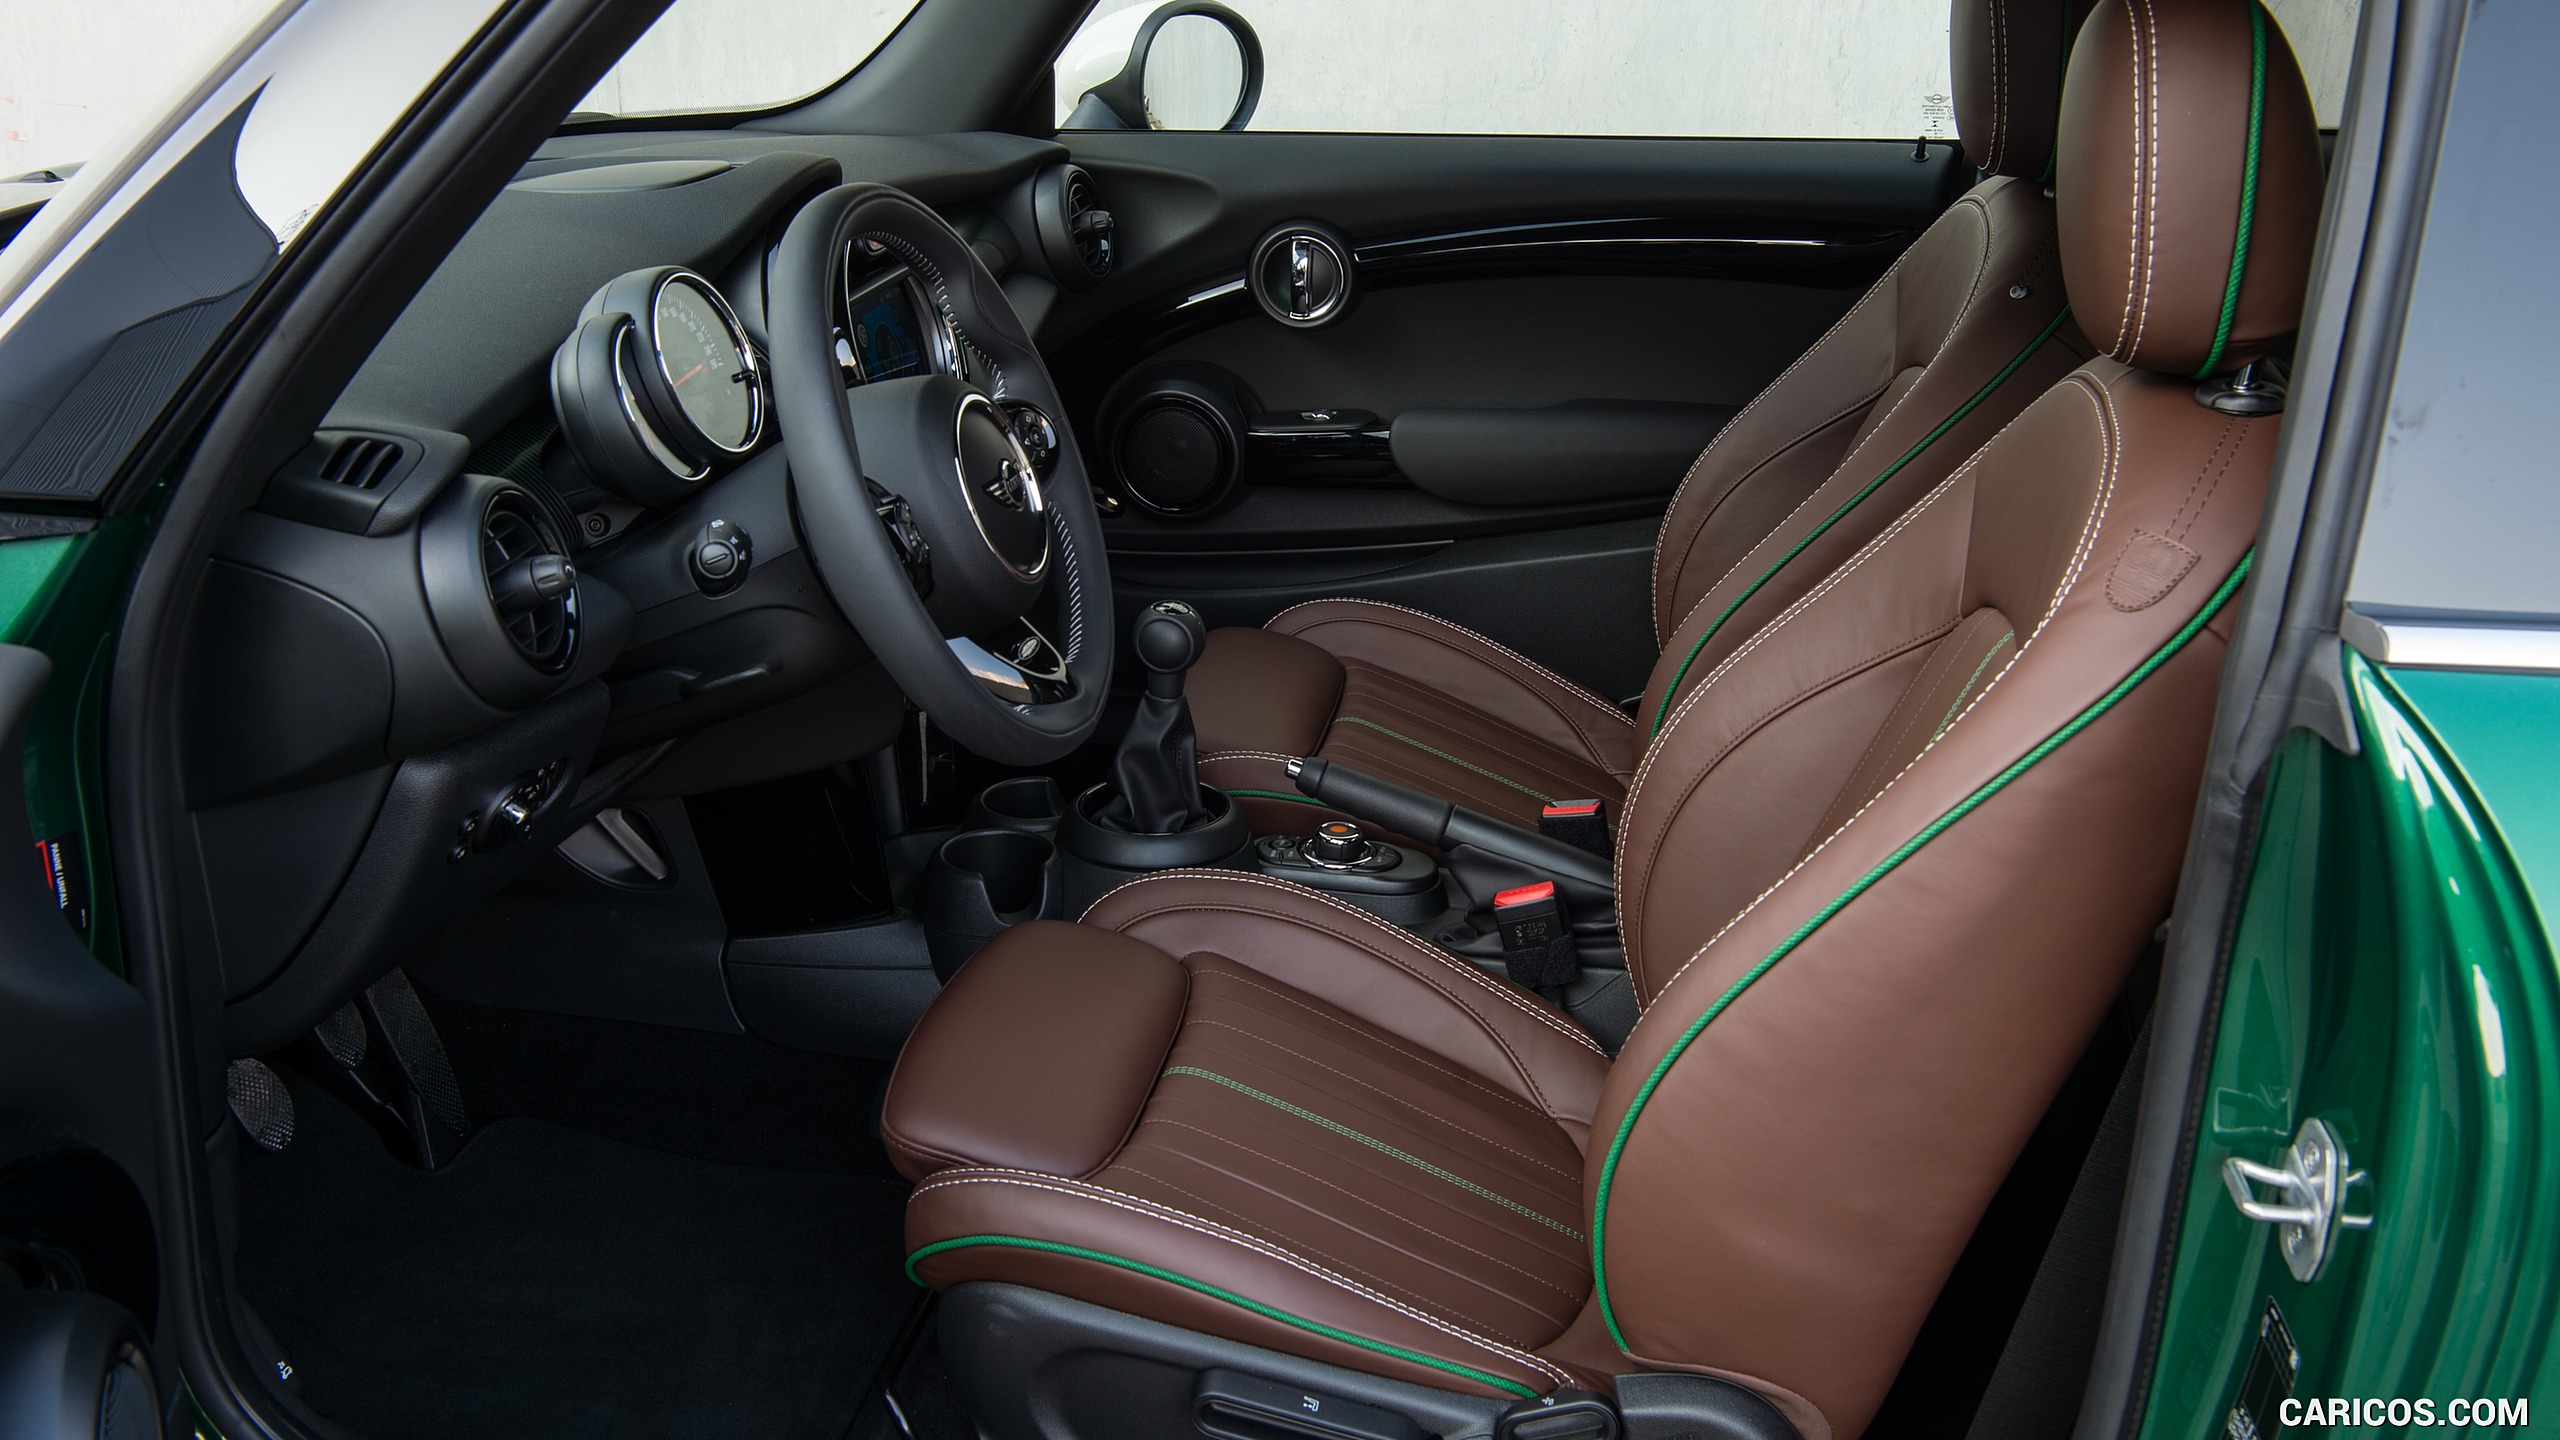 2019 MINI Cooper 3-Door 60 Years Edition - Interior, Front Seats, #84 of 102